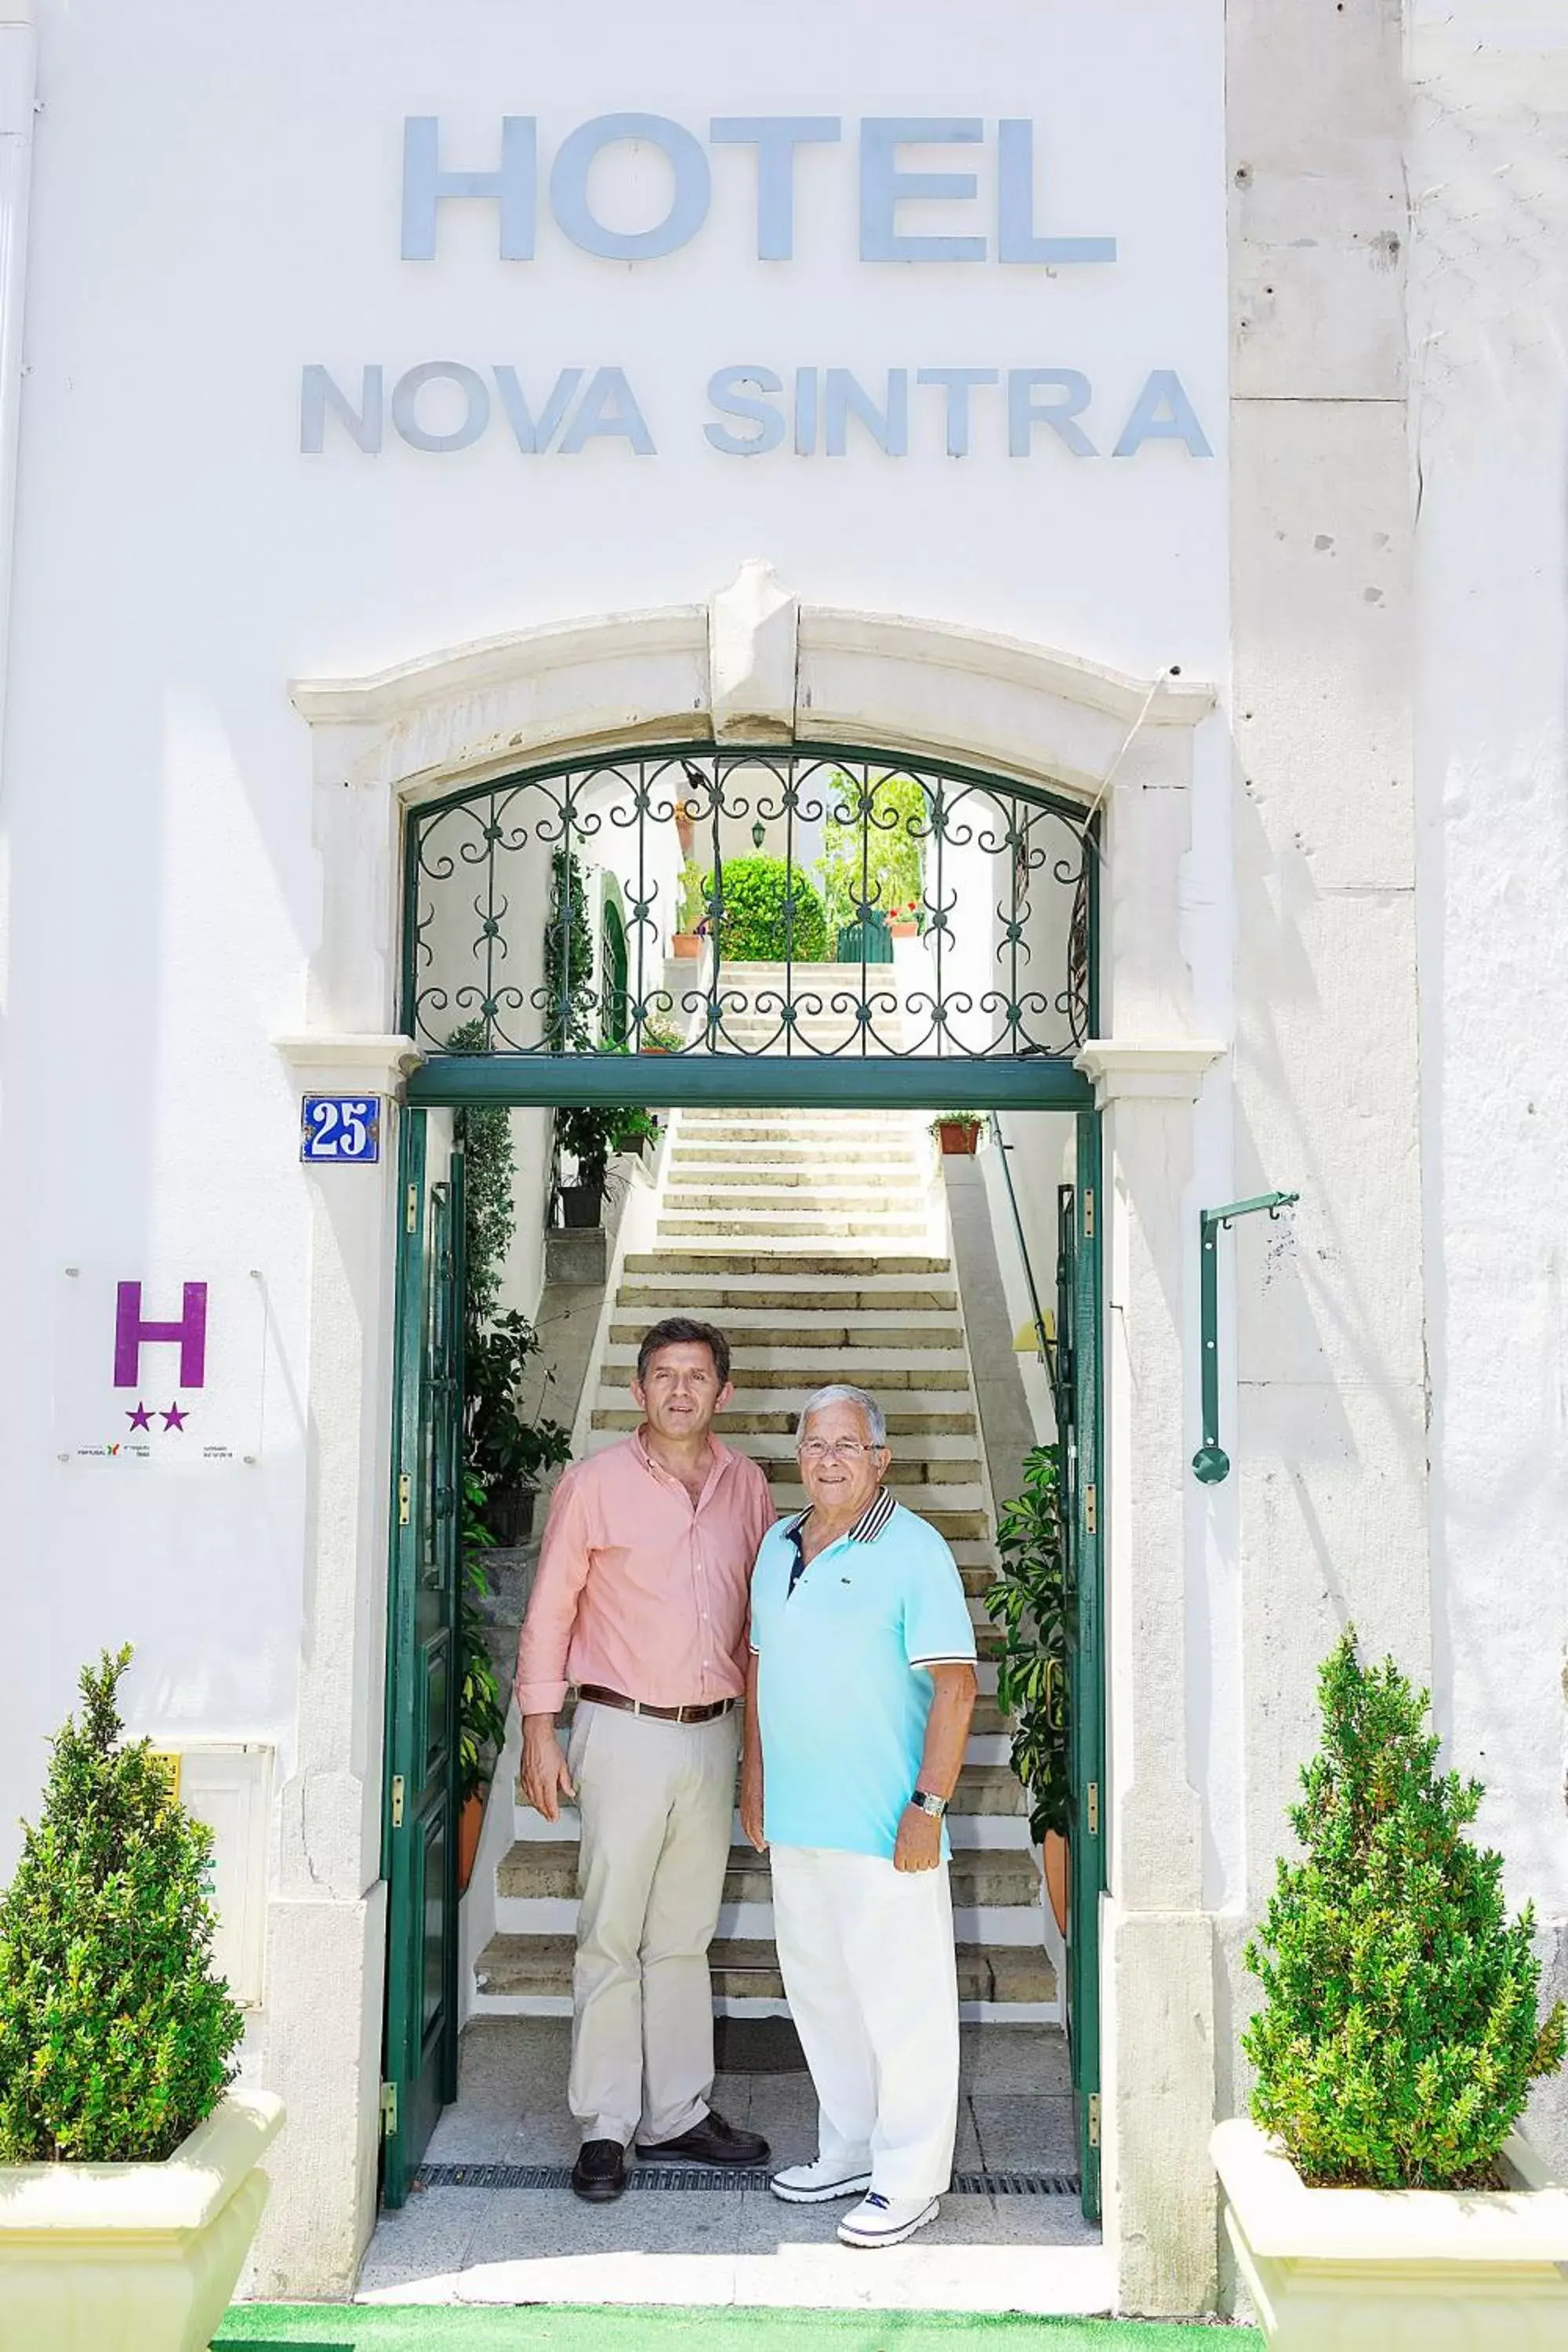 Facade/entrance in Hotel Nova Sintra